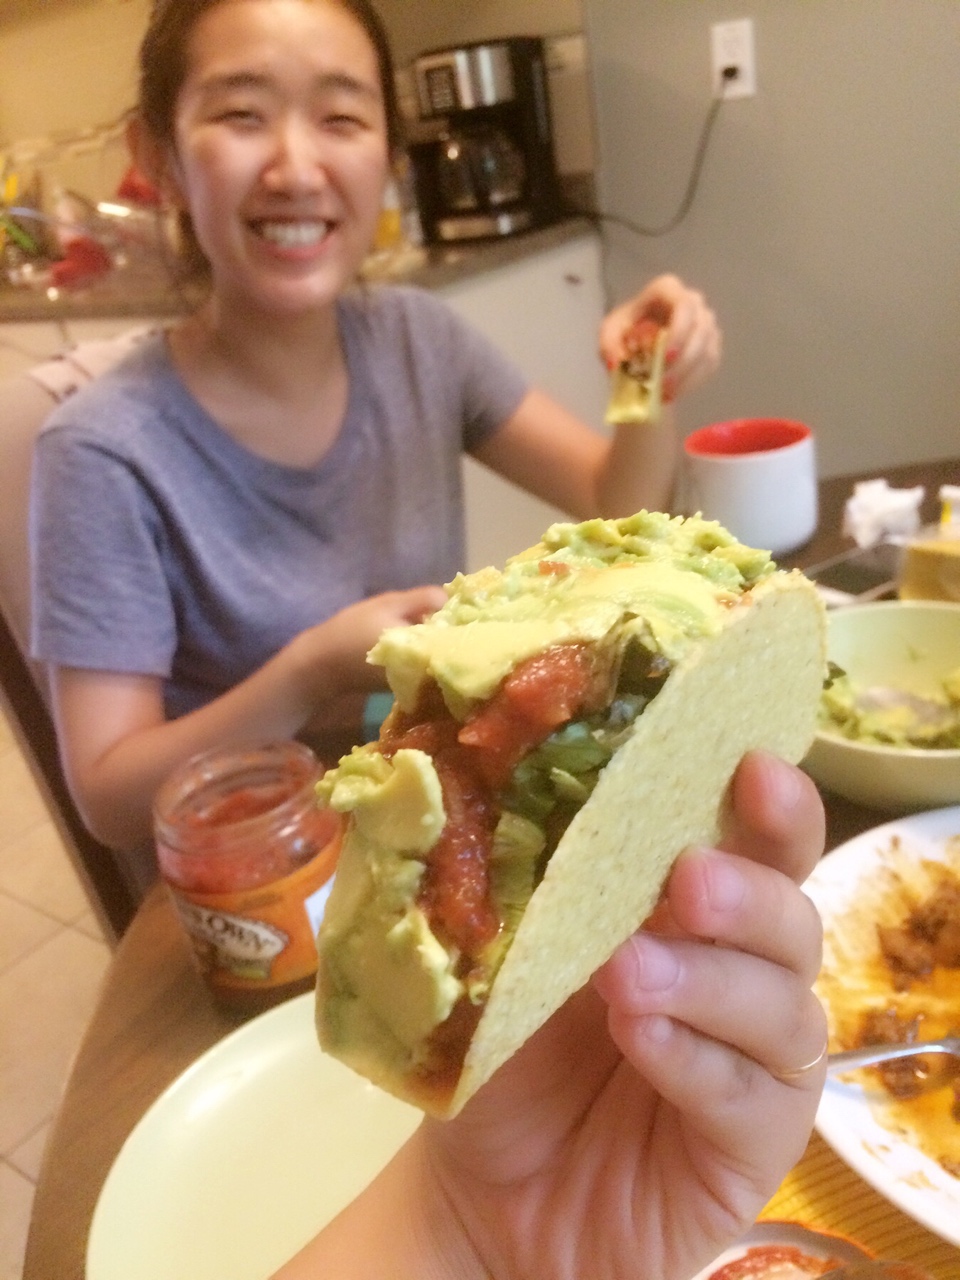 墨西哥卷饼(Taco)